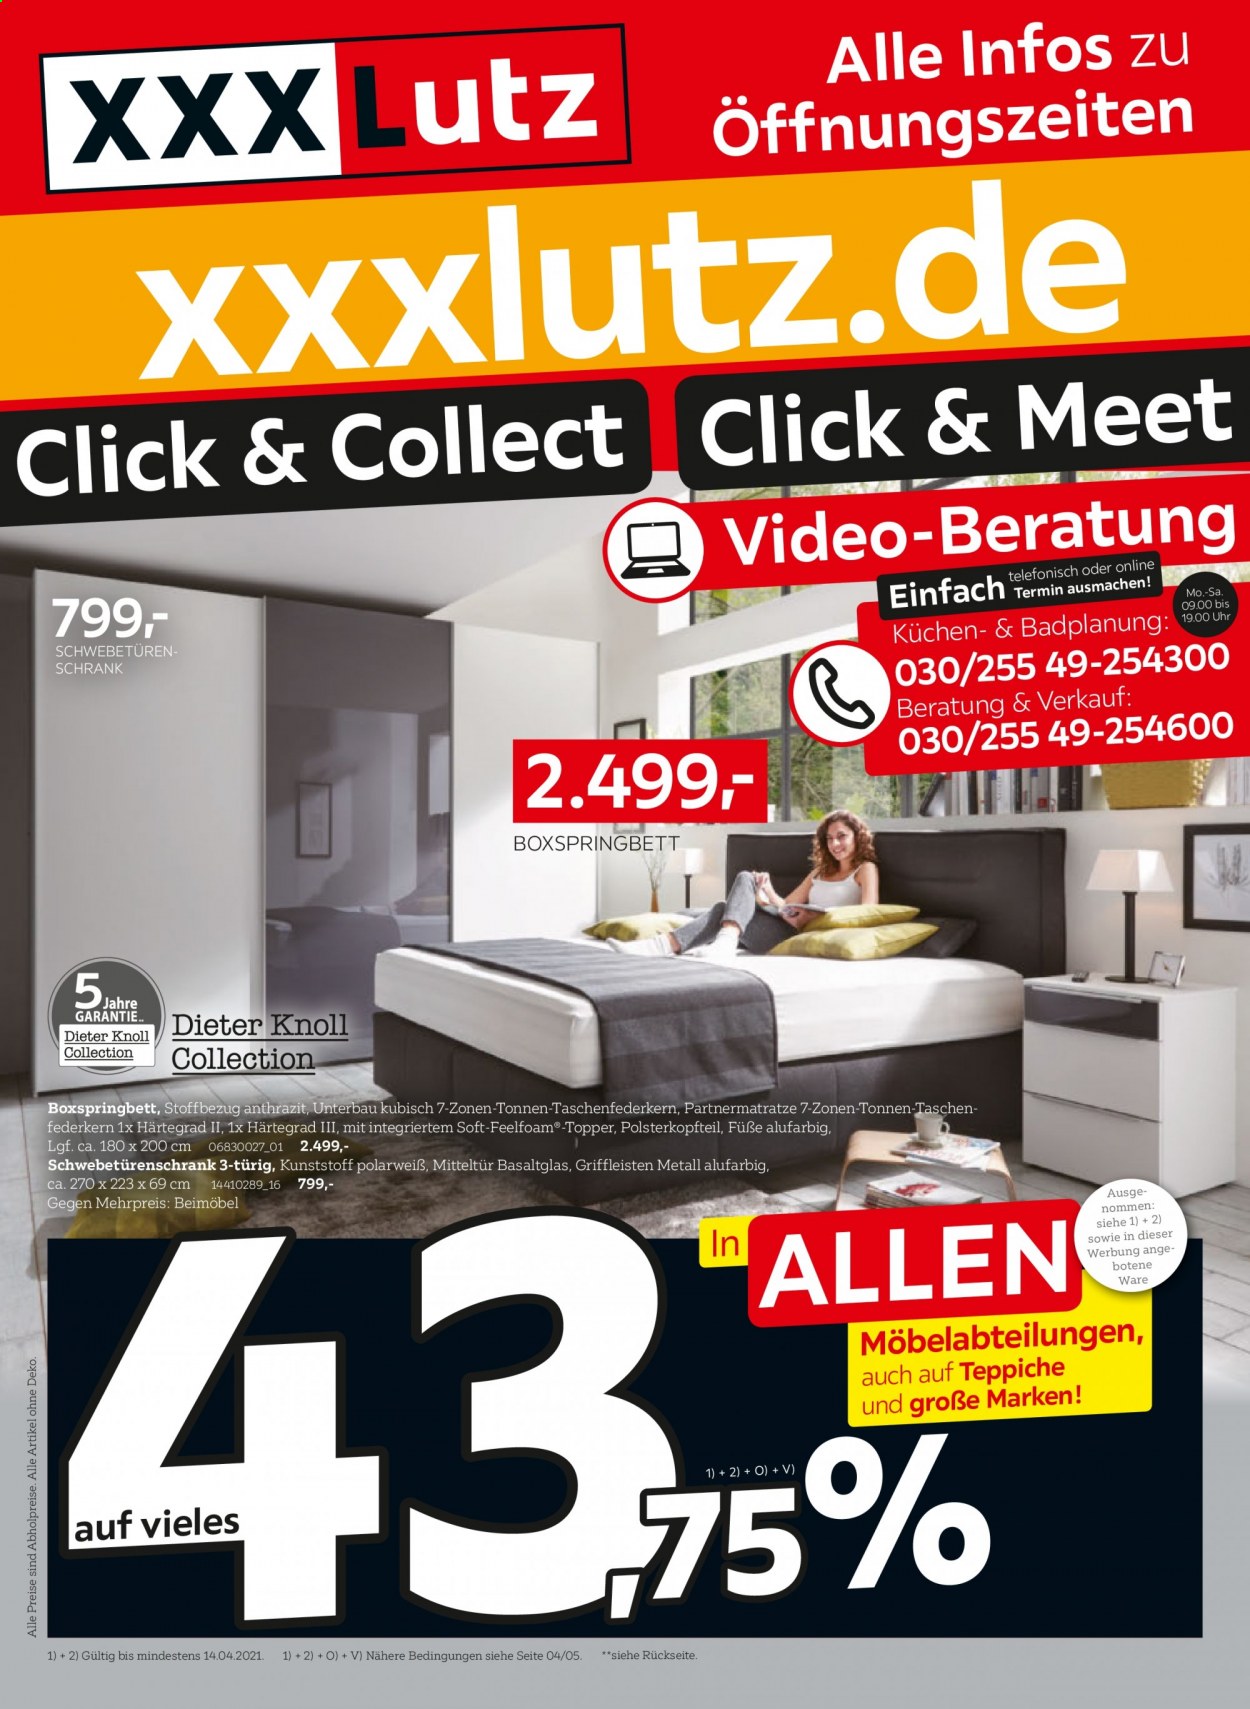 thumbnail - Prospekte XXXLutz - 1.04.2021 - 14.04.2021 - Produkte in Aktion - Boxspringbett, Schwebetürenschrank, Küchen. Seite 1.